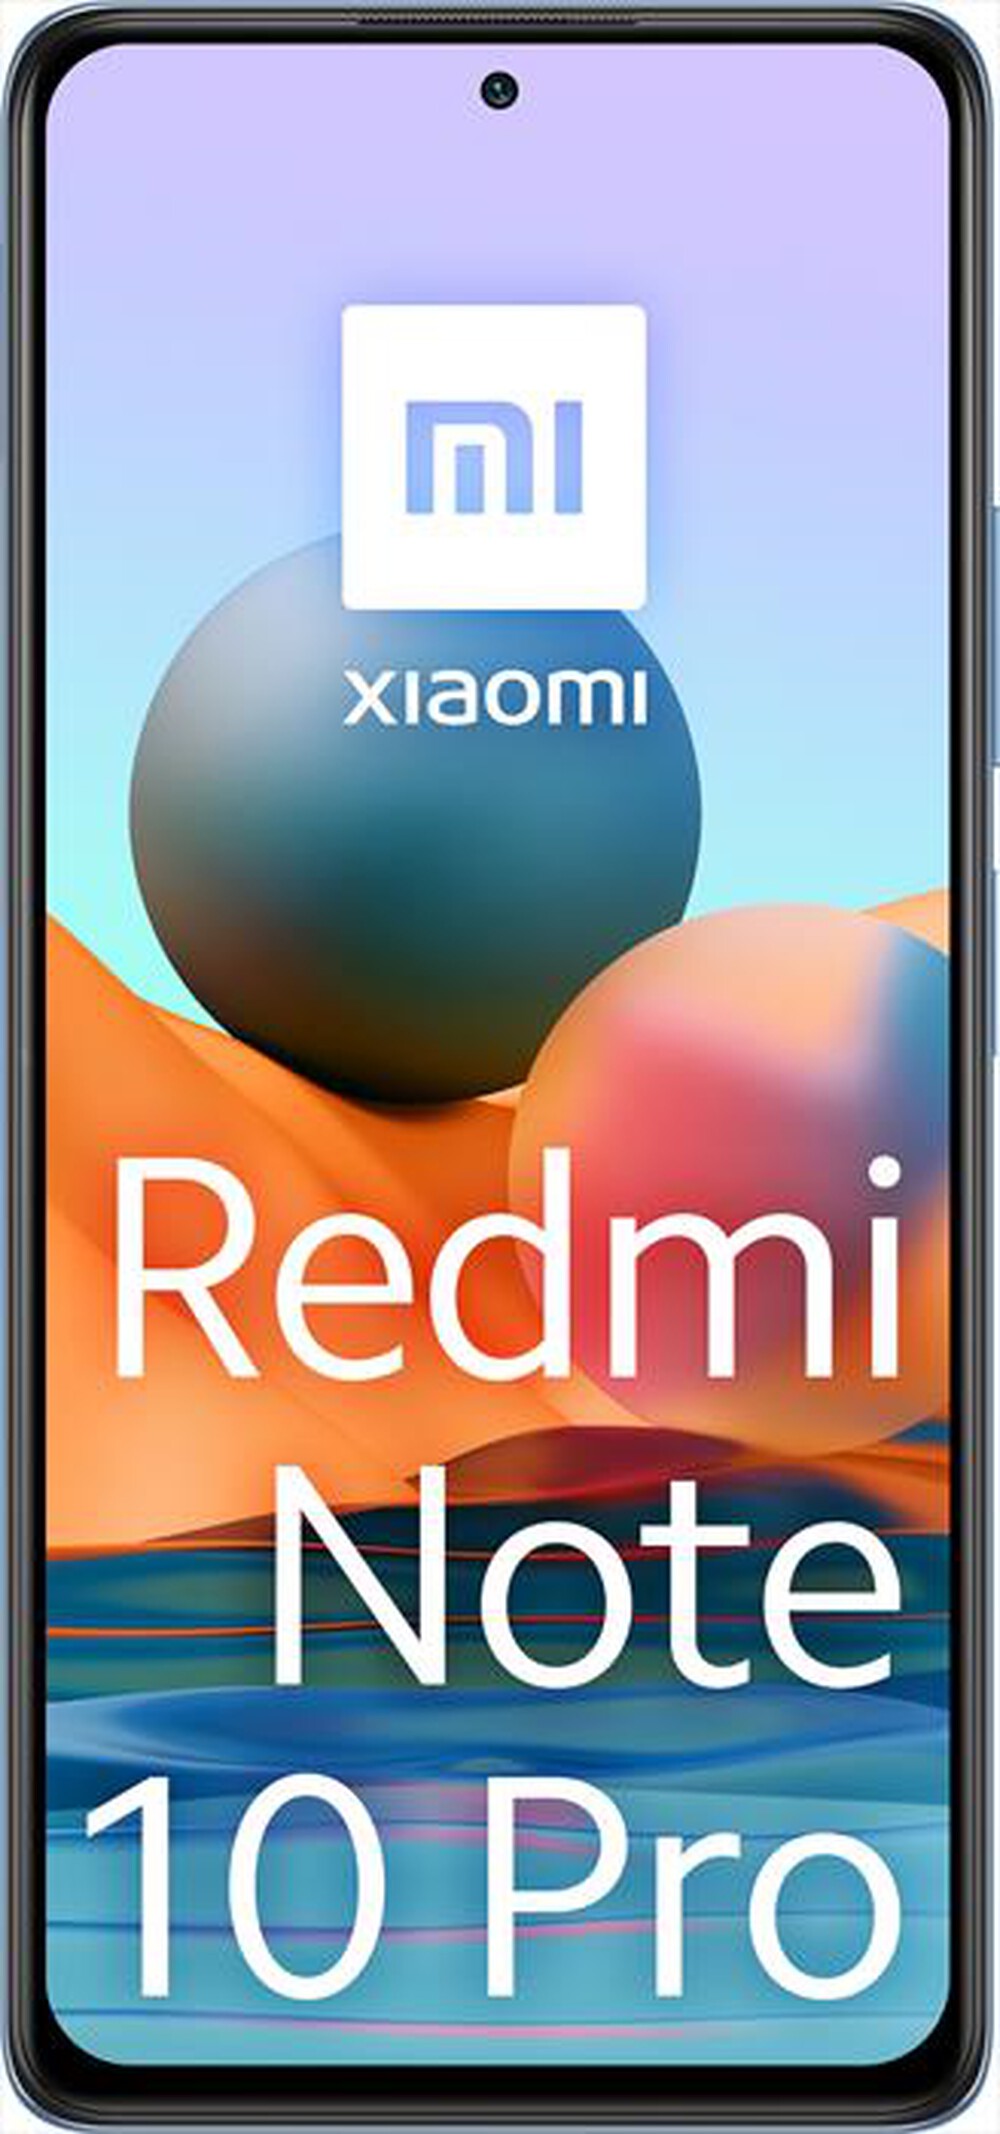 "XIAOMI - SMARTPHONE REDMI NOTE 10 PRO 6+128GB-Glacier Blue"